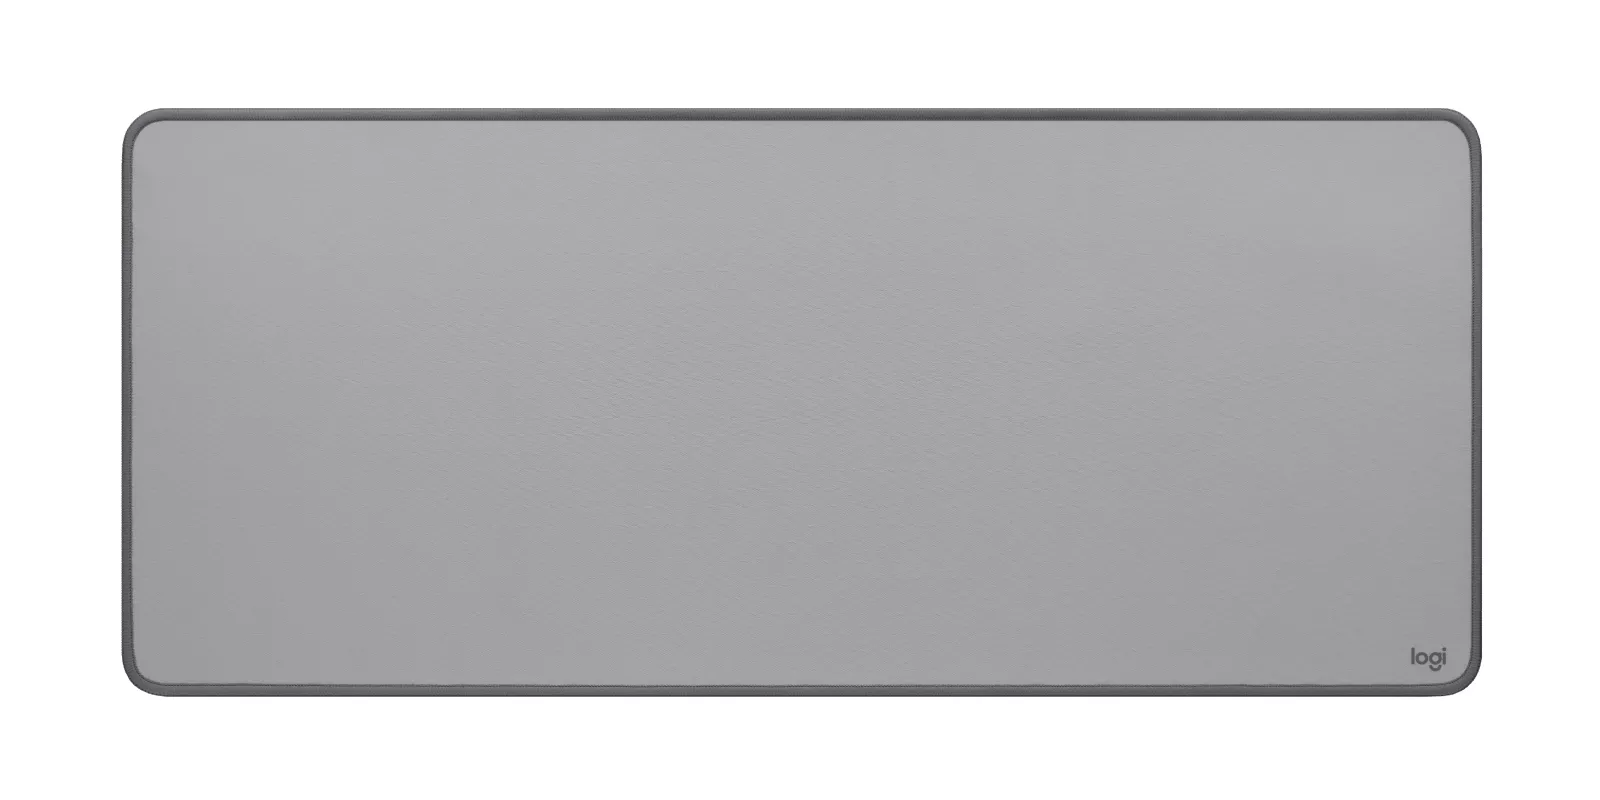 Vente LOGITECH Desk Mat Studio Series Mouse pad mid Logitech au meilleur prix - visuel 4